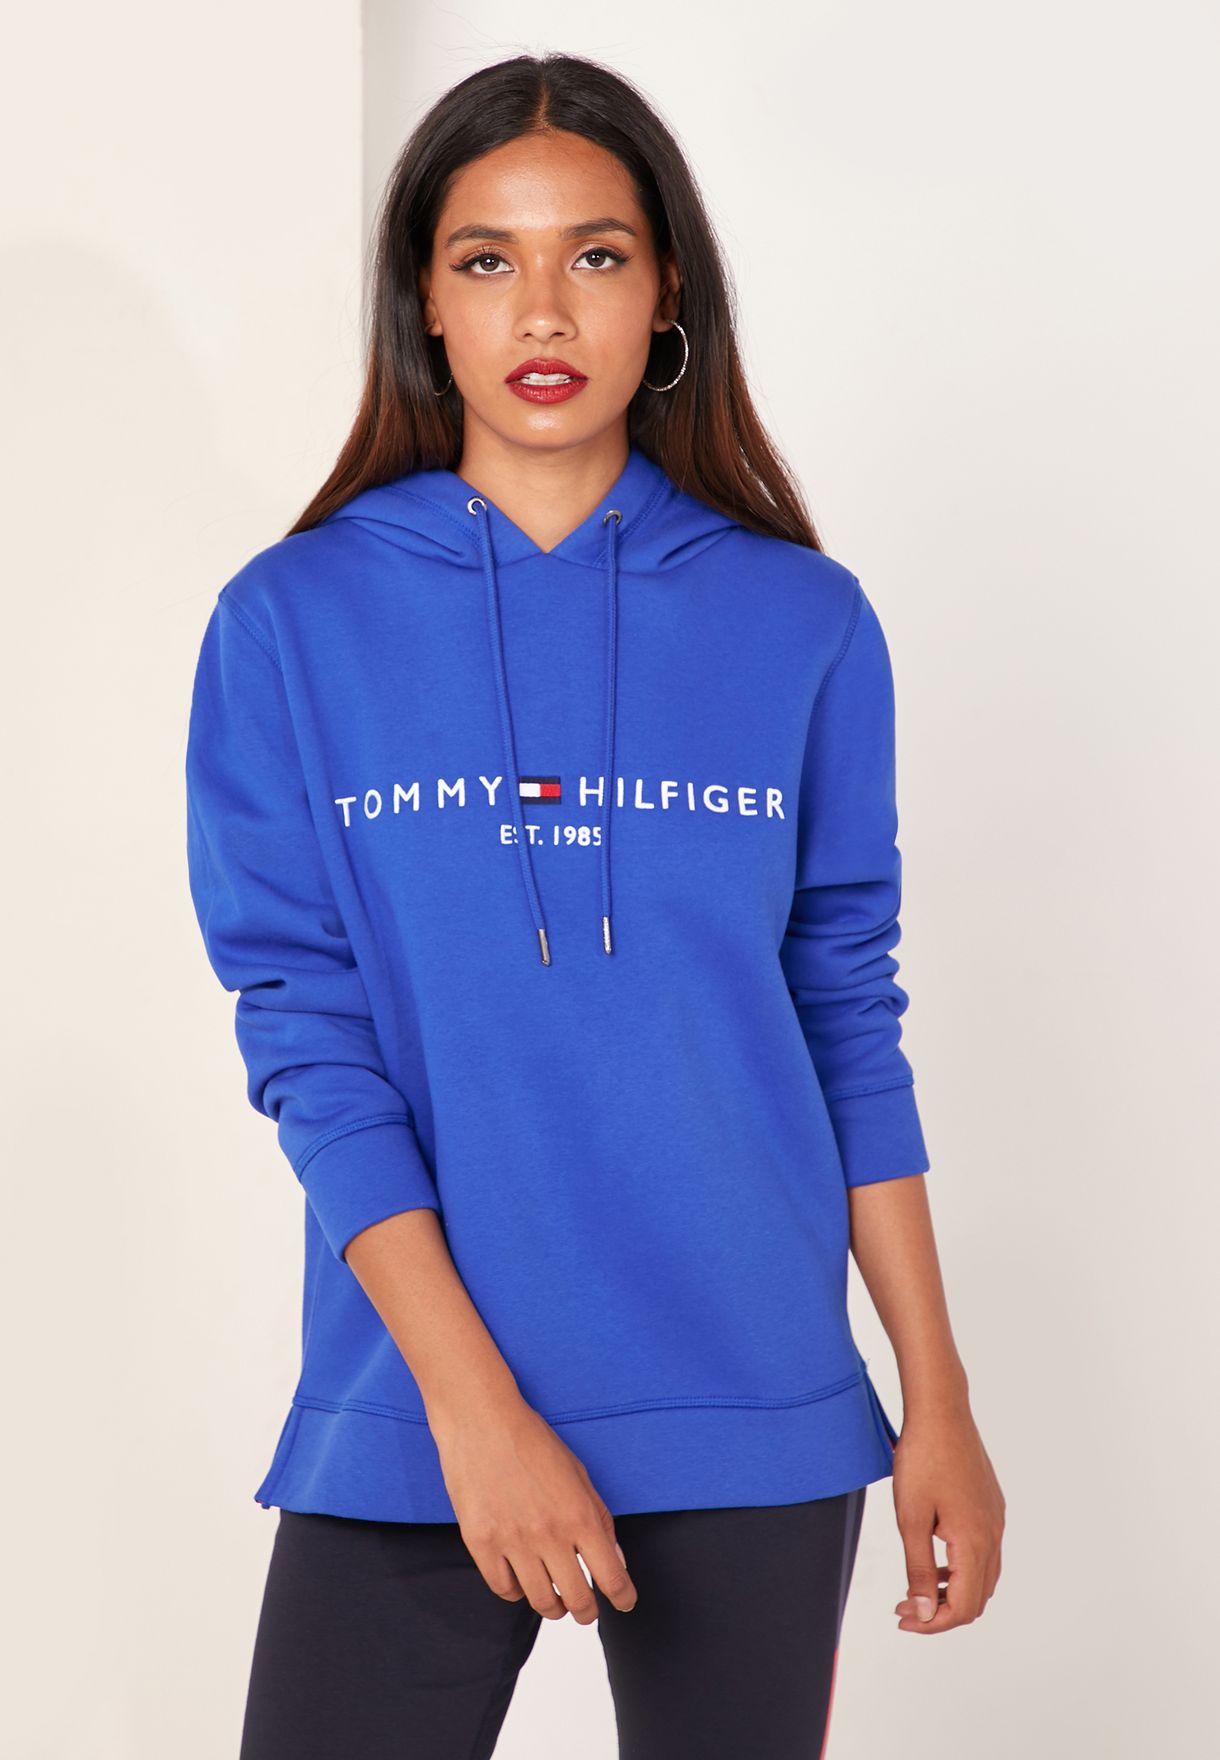 blue hoodie women's